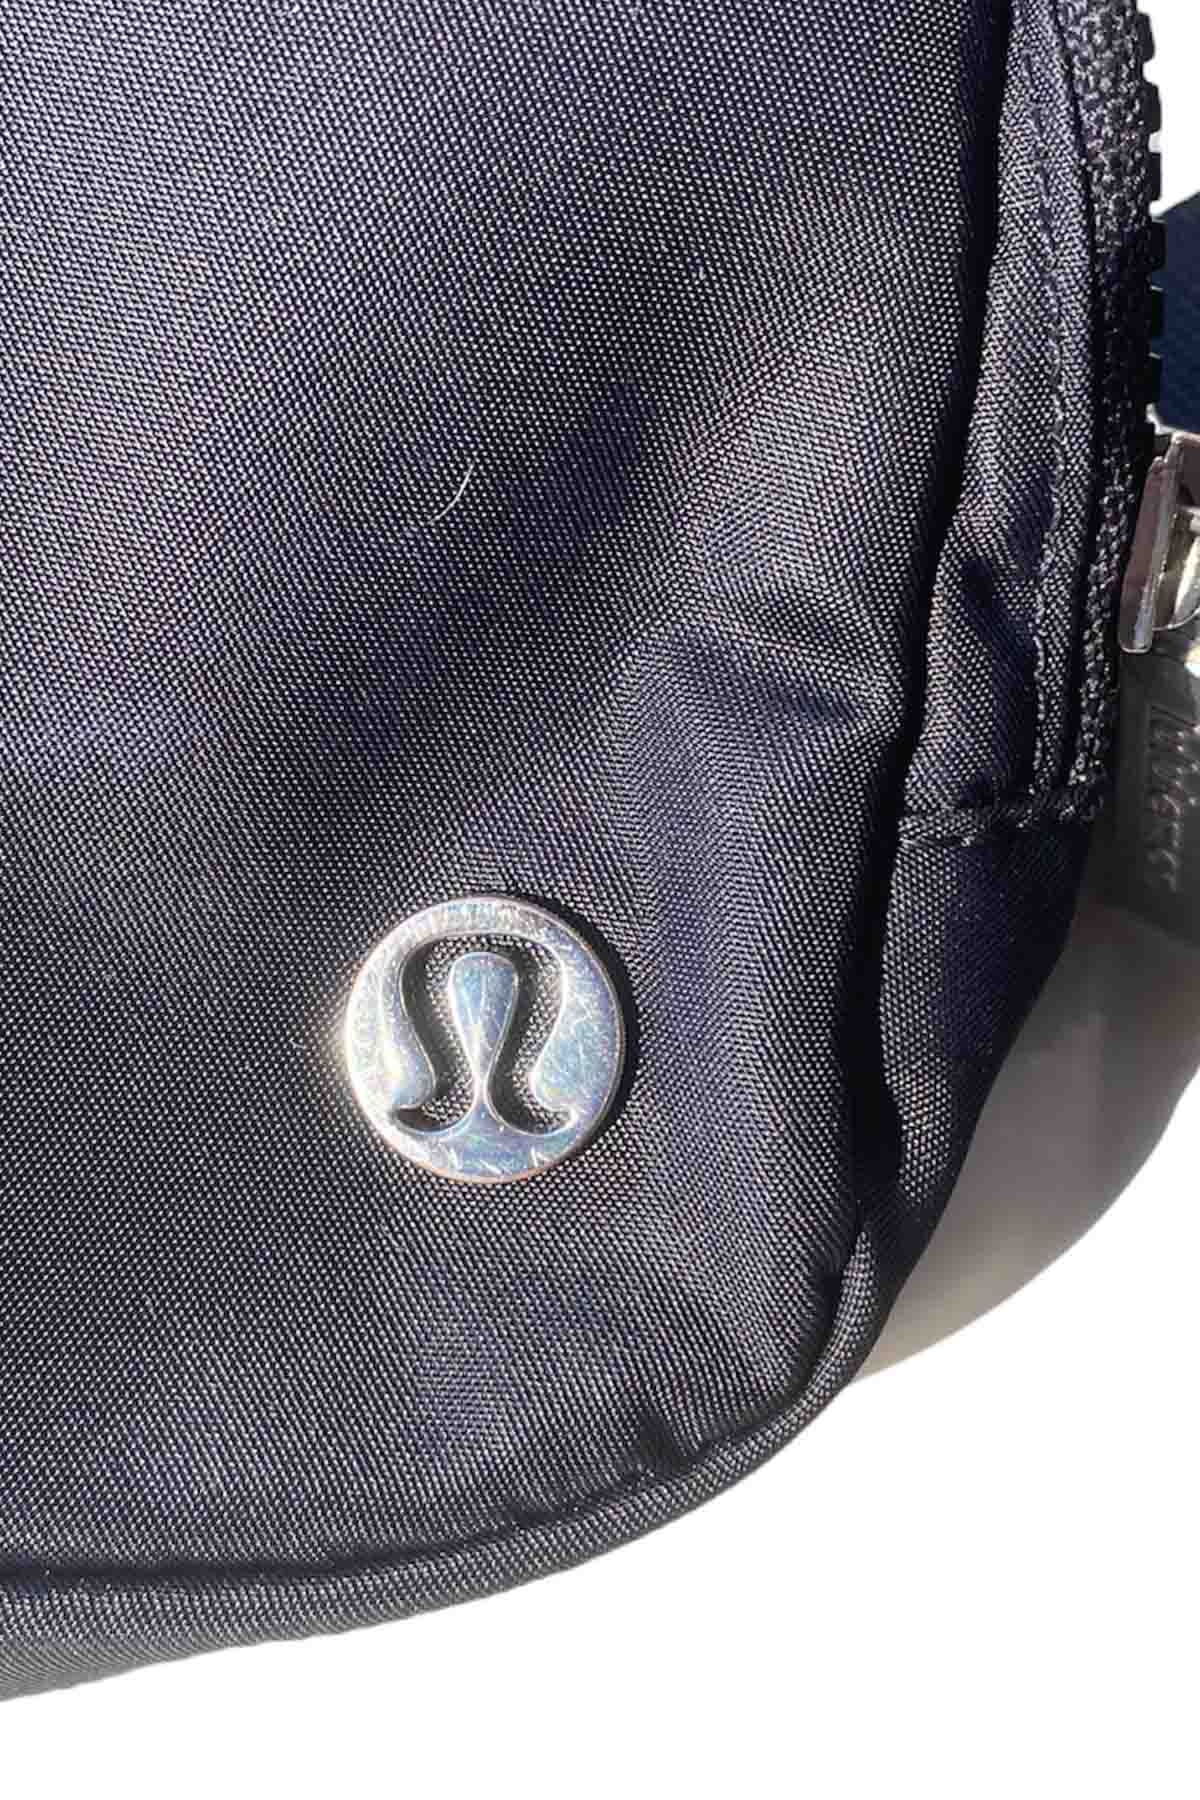 picture of the lululemon logo hardware of a black lululemon belt bag.